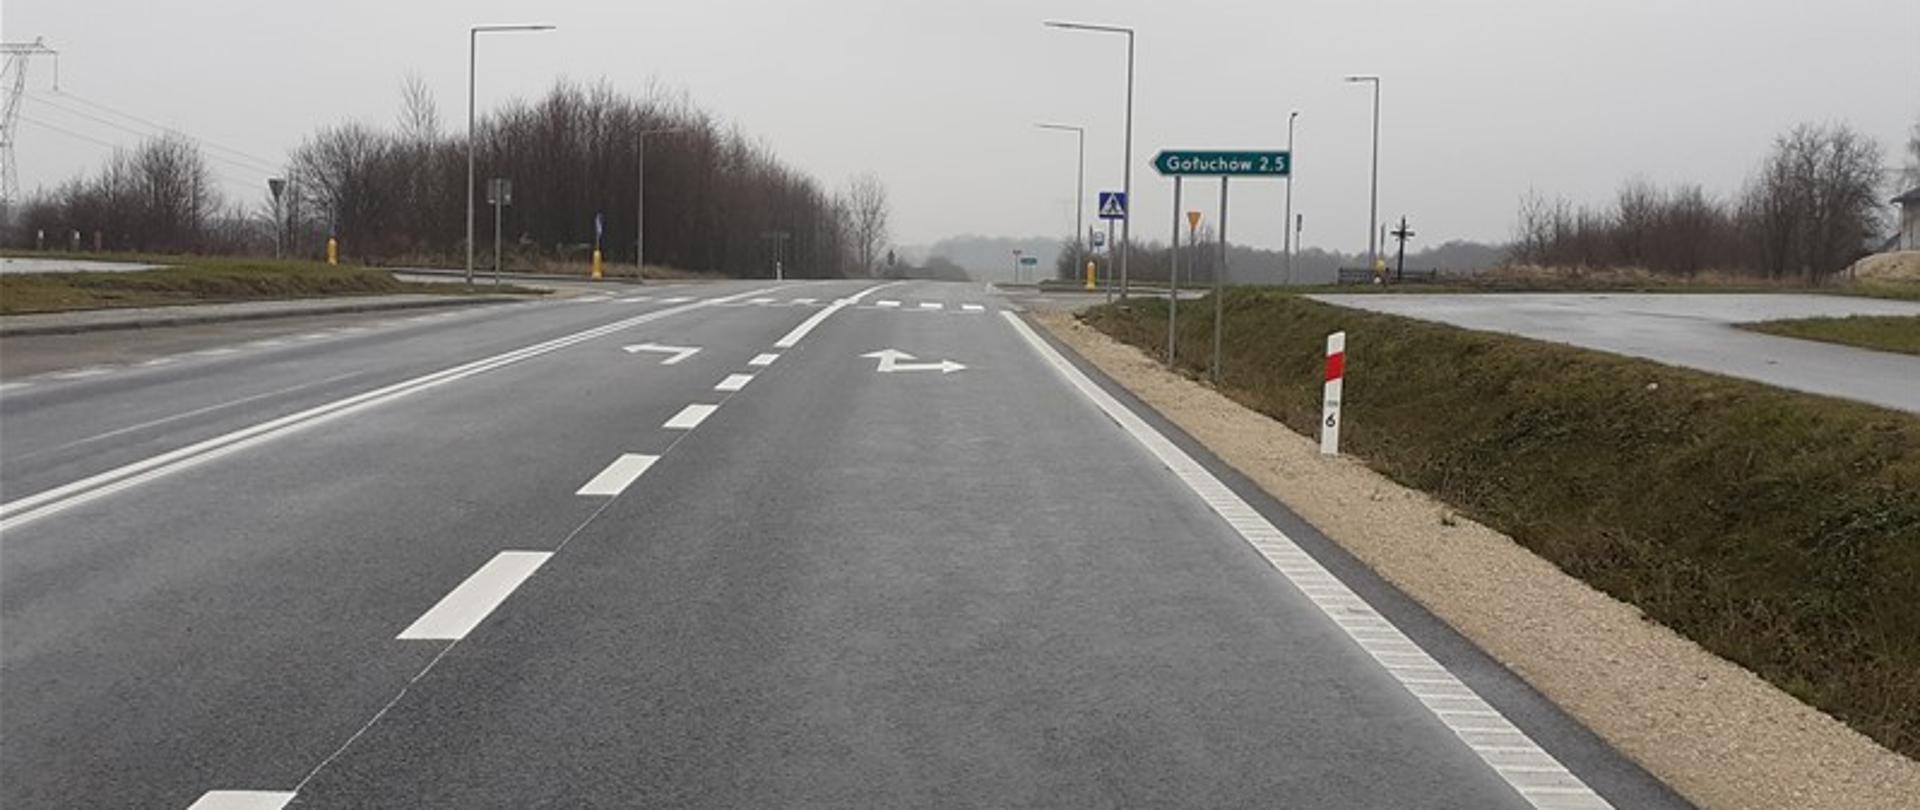 DK78 odcinek Kije - Chmielnik - asfaltowa droga jednojezdniowa, na niej namalowane białe linie przerywane i strzałki, w oddali skrzyżowanie z przejściem dla pieszych, drogowskaz, Wzdłuż drogi trawa, krzewy rowy